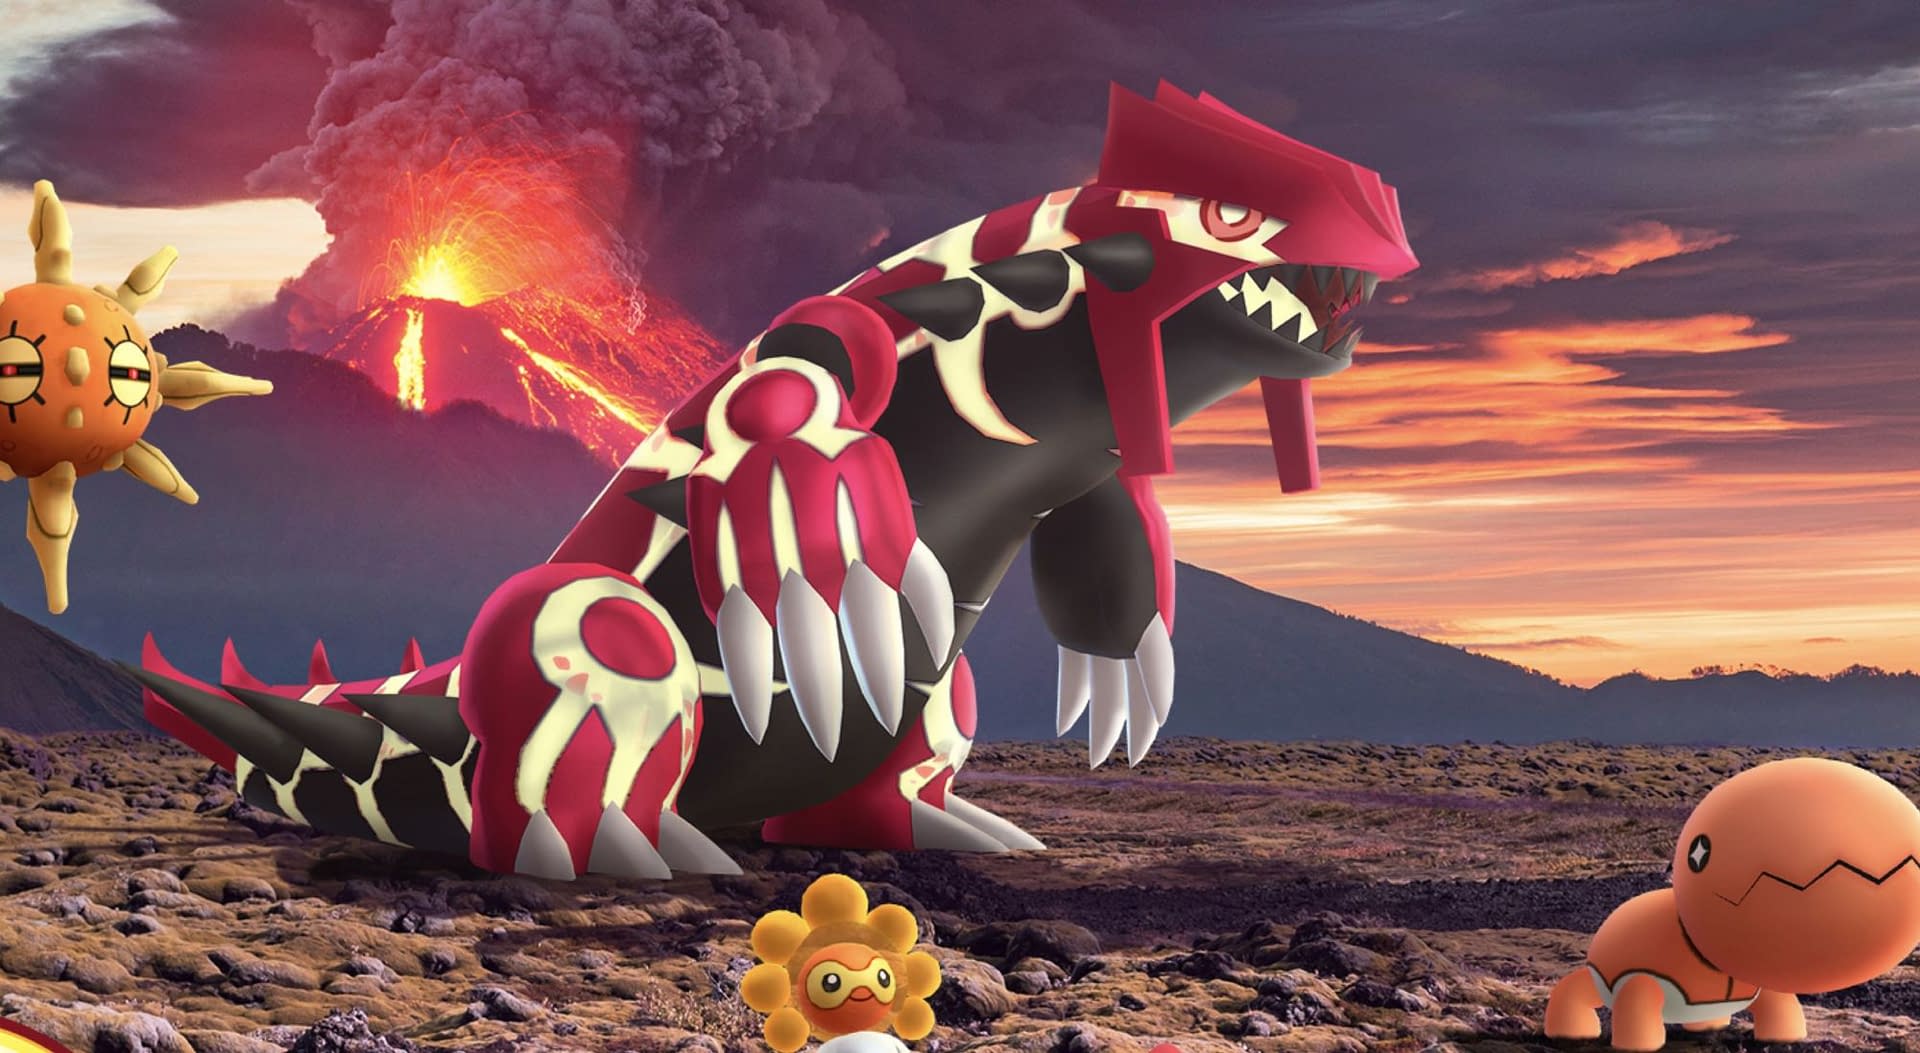 Groudon returns to Pokémon Go raids, Shiny Diglett added - Polygon